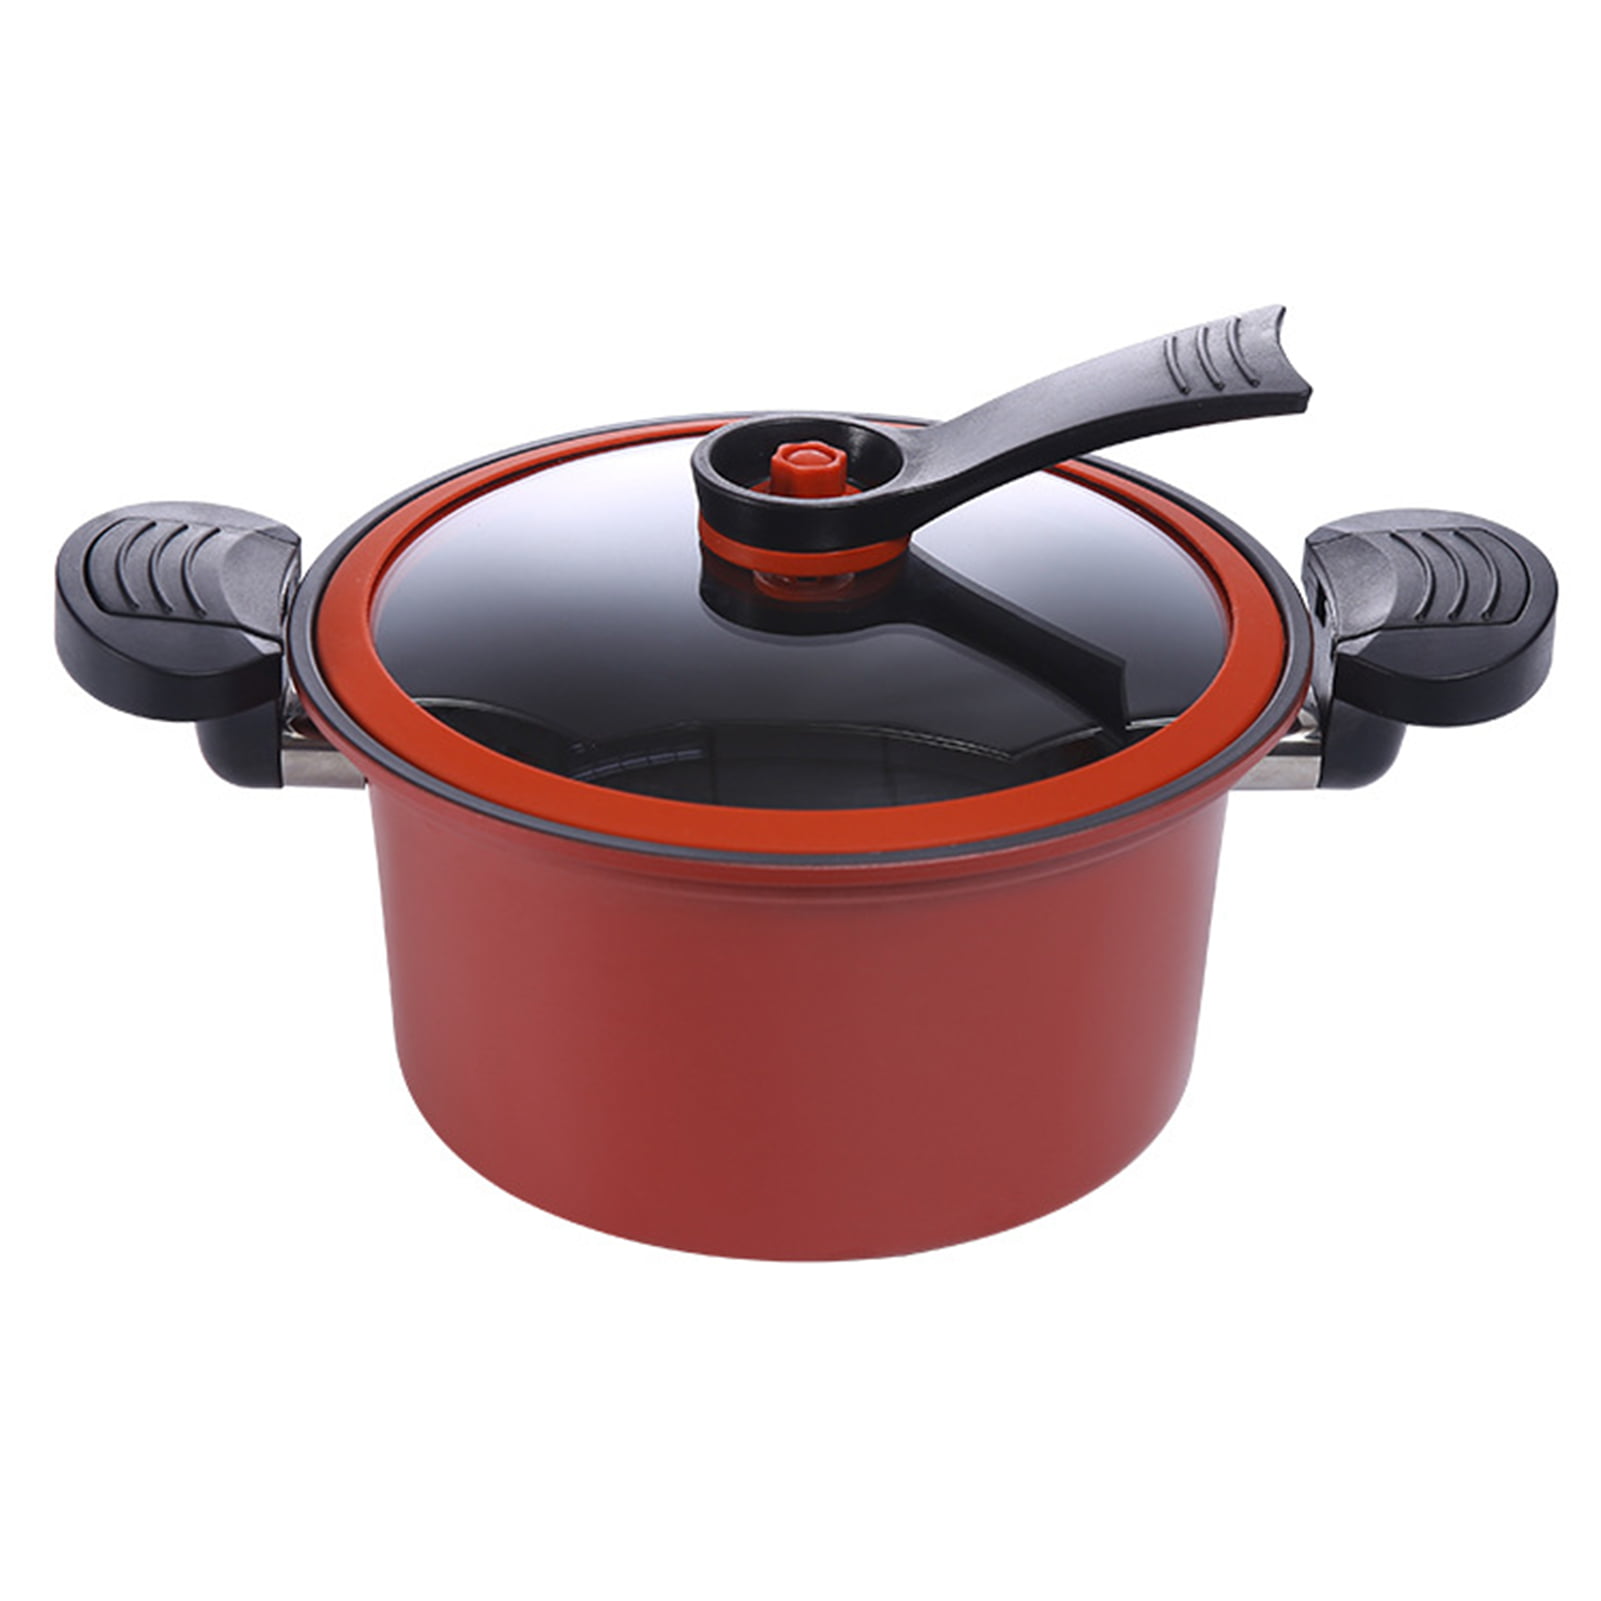 Saucepan Enamel Cooking Pot Induction Soup Pot with Lid Cream 8 L 